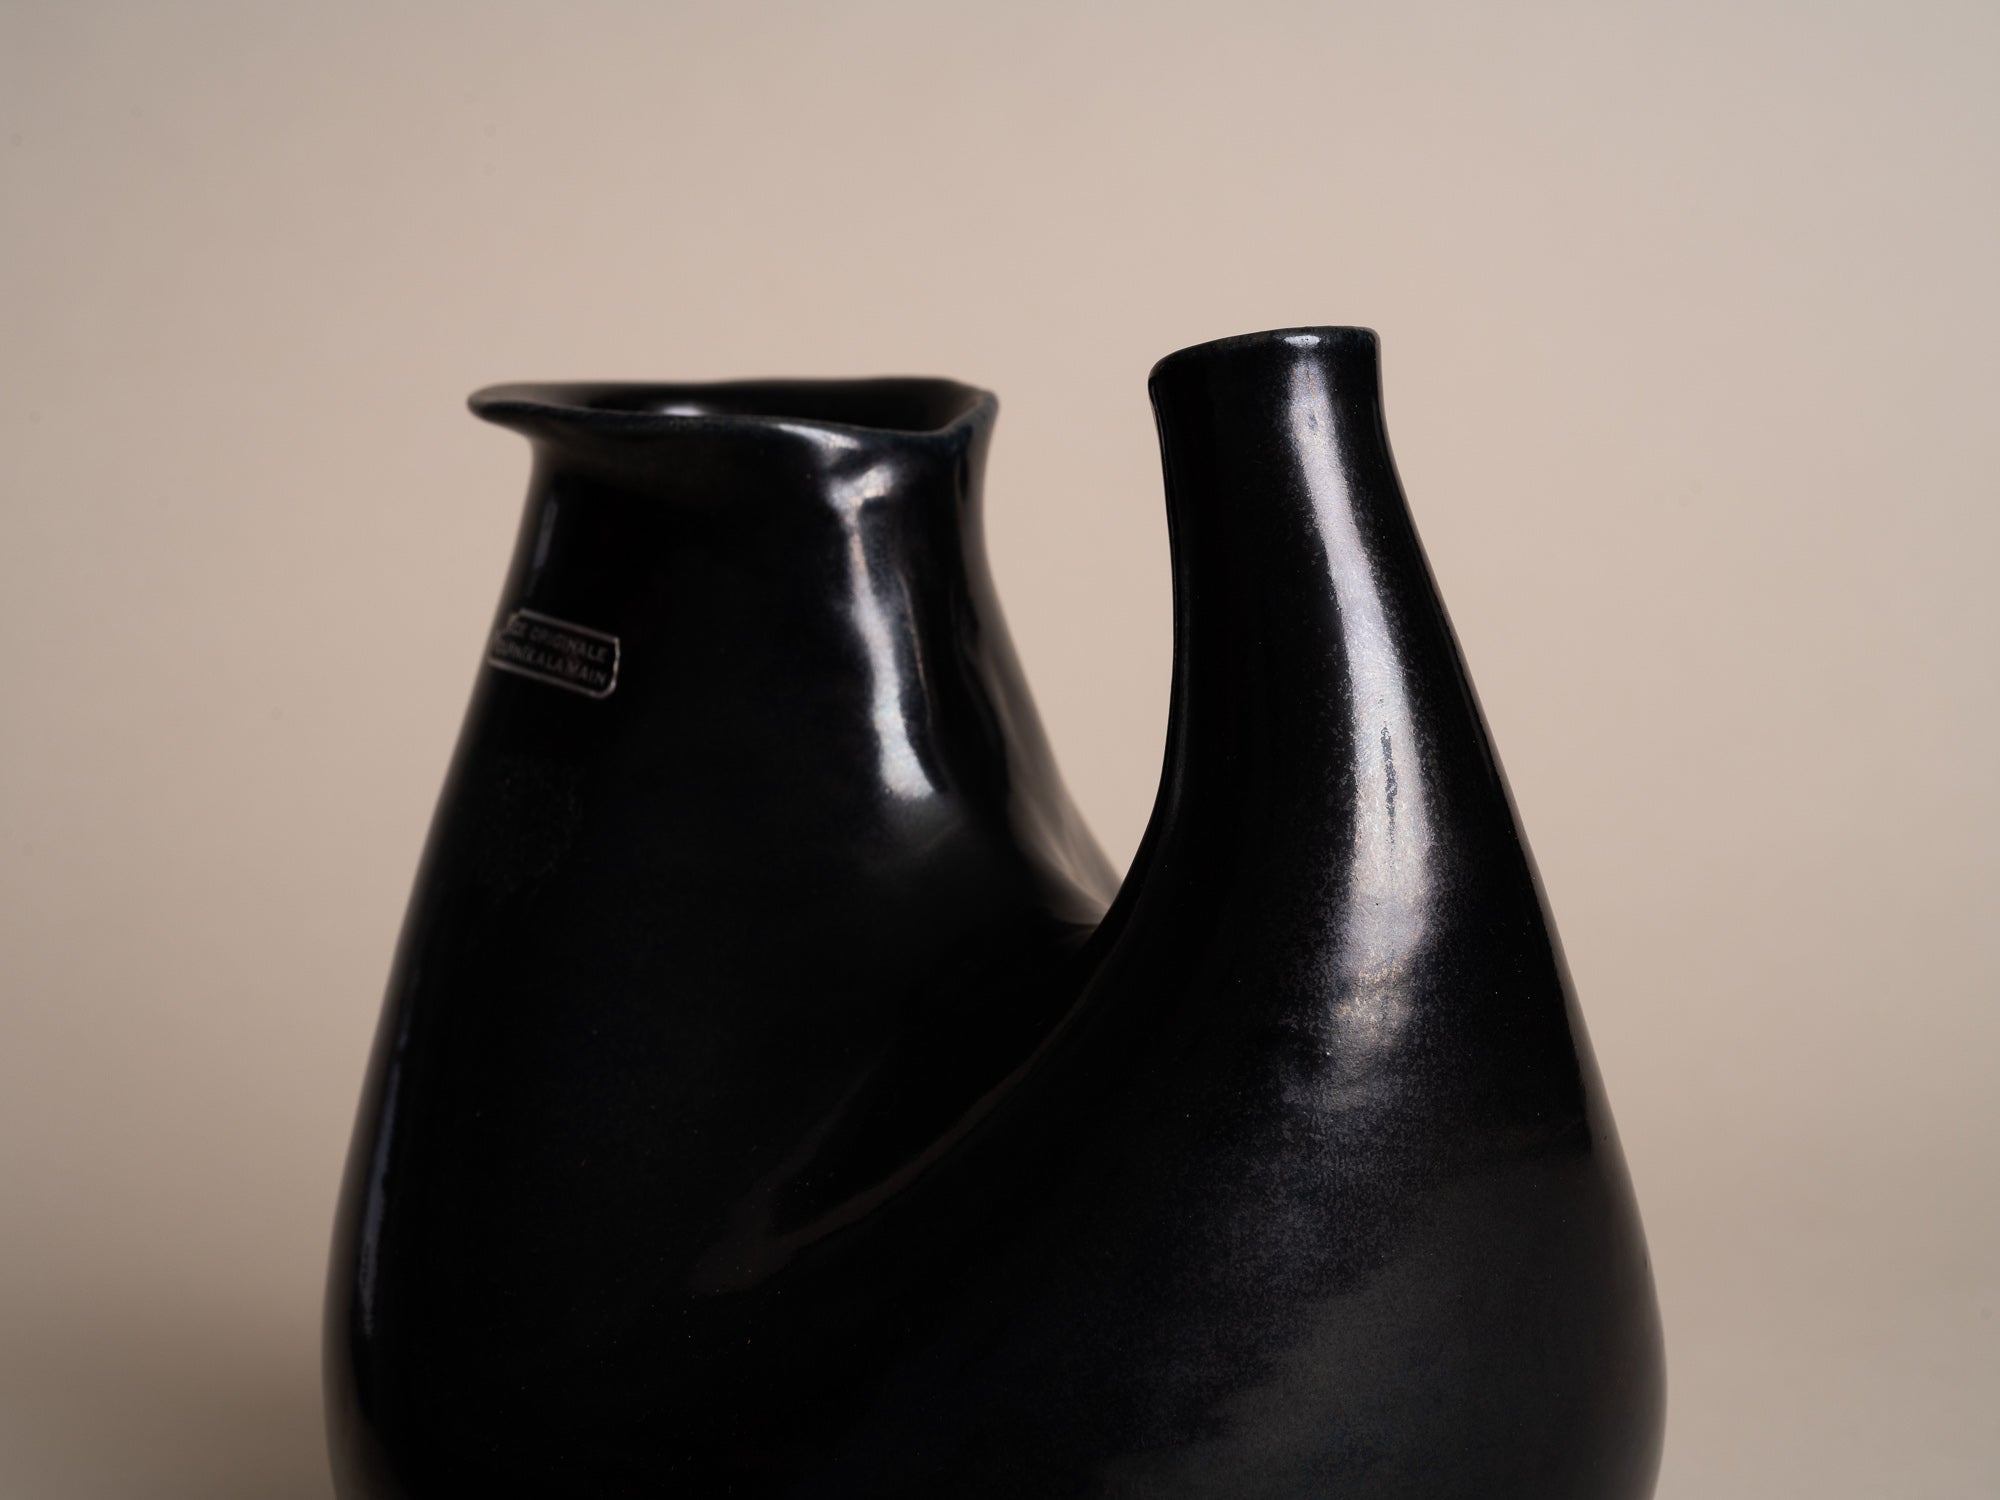 Vase biomorphique des Potiers d'Accolay, France (vers 1955)..Freeform Vase by les Potiers d'Accolay, France (ca 1955)